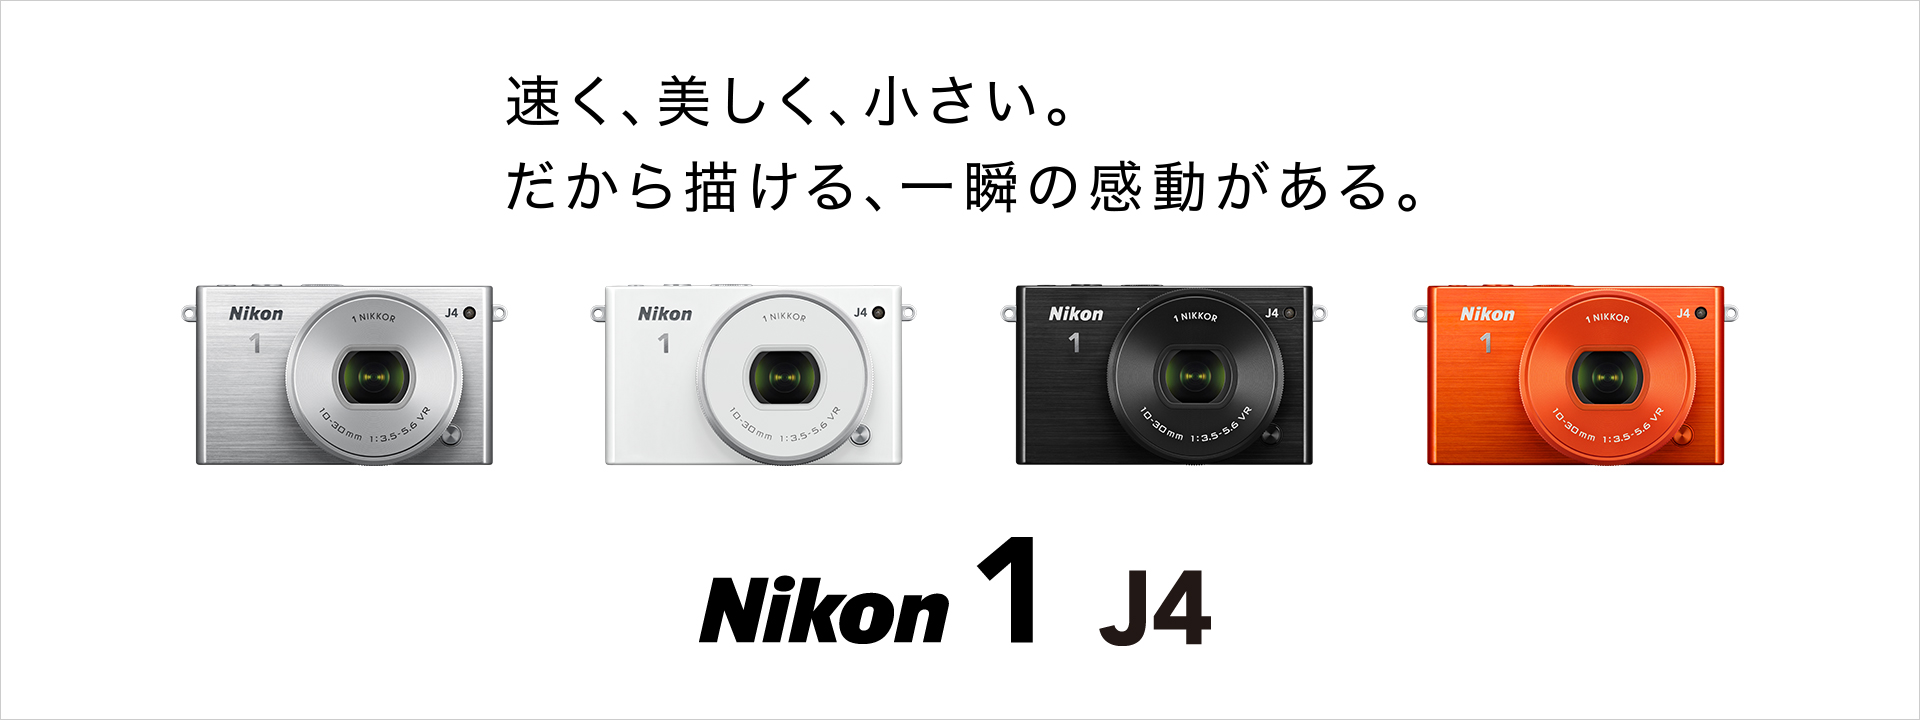 カメラ デジタルカメラ Nikon 1 J4 - 概要 | ミラーレスカメラ | ニコンイメージング